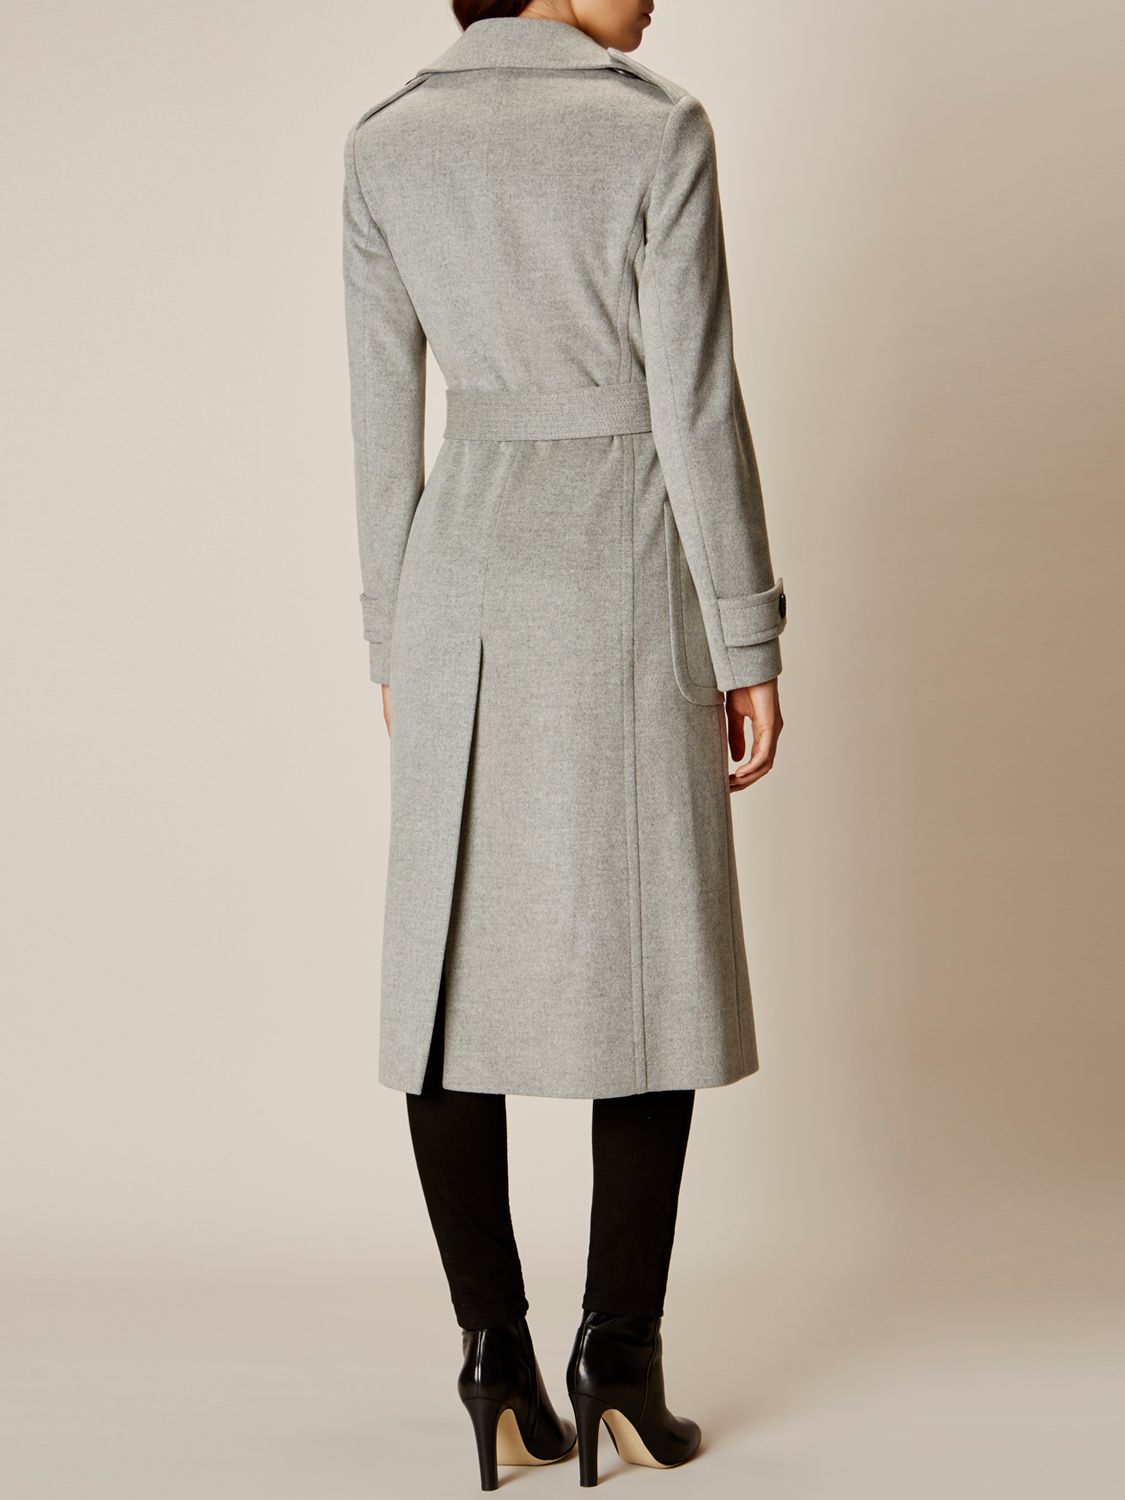 Karen Millen Investment Wool Coat, Grey